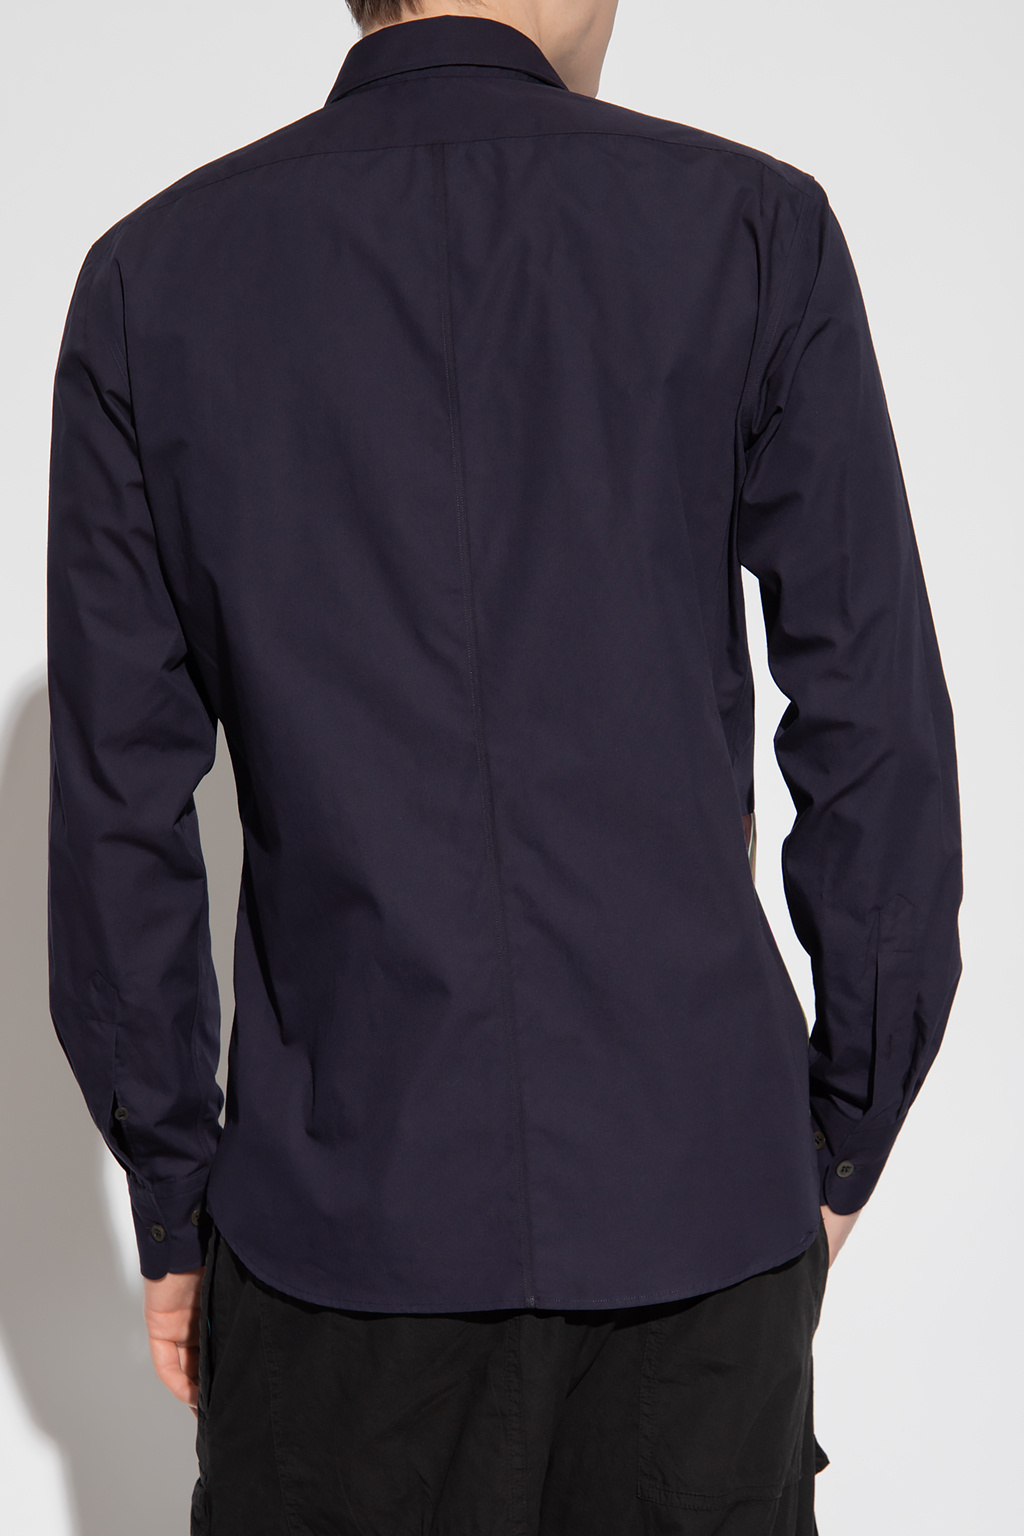 Dries Van Noten hoodie shirt with insert